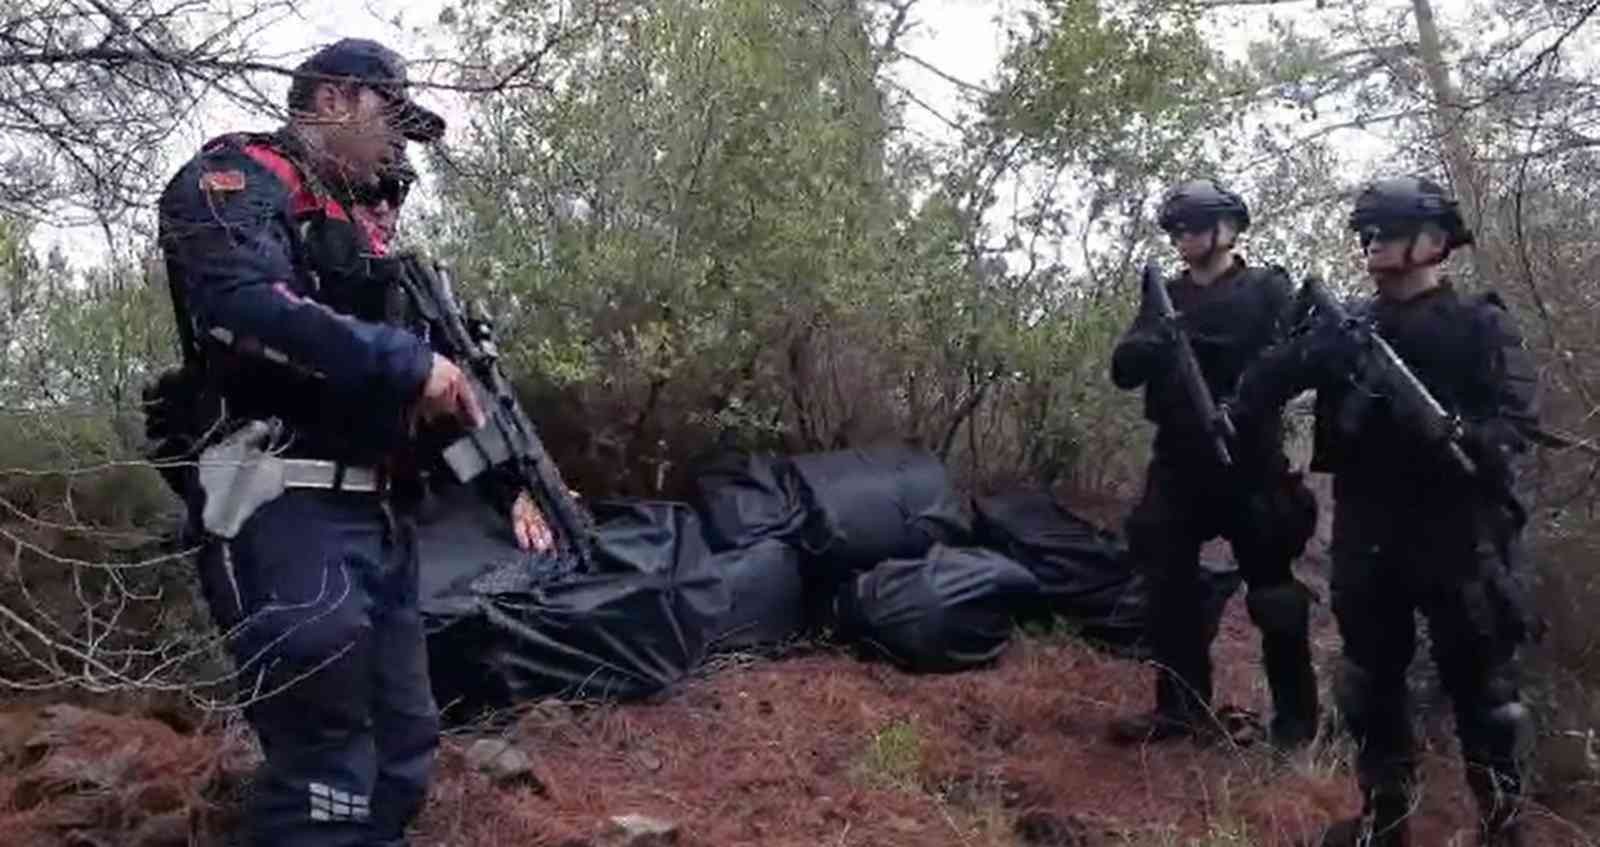 Muğla açıklarında Arnavutluk’tan Türkiye’ye getirilmek istenen 1,5 ton uyuşturucu ele geçirildi #mugla